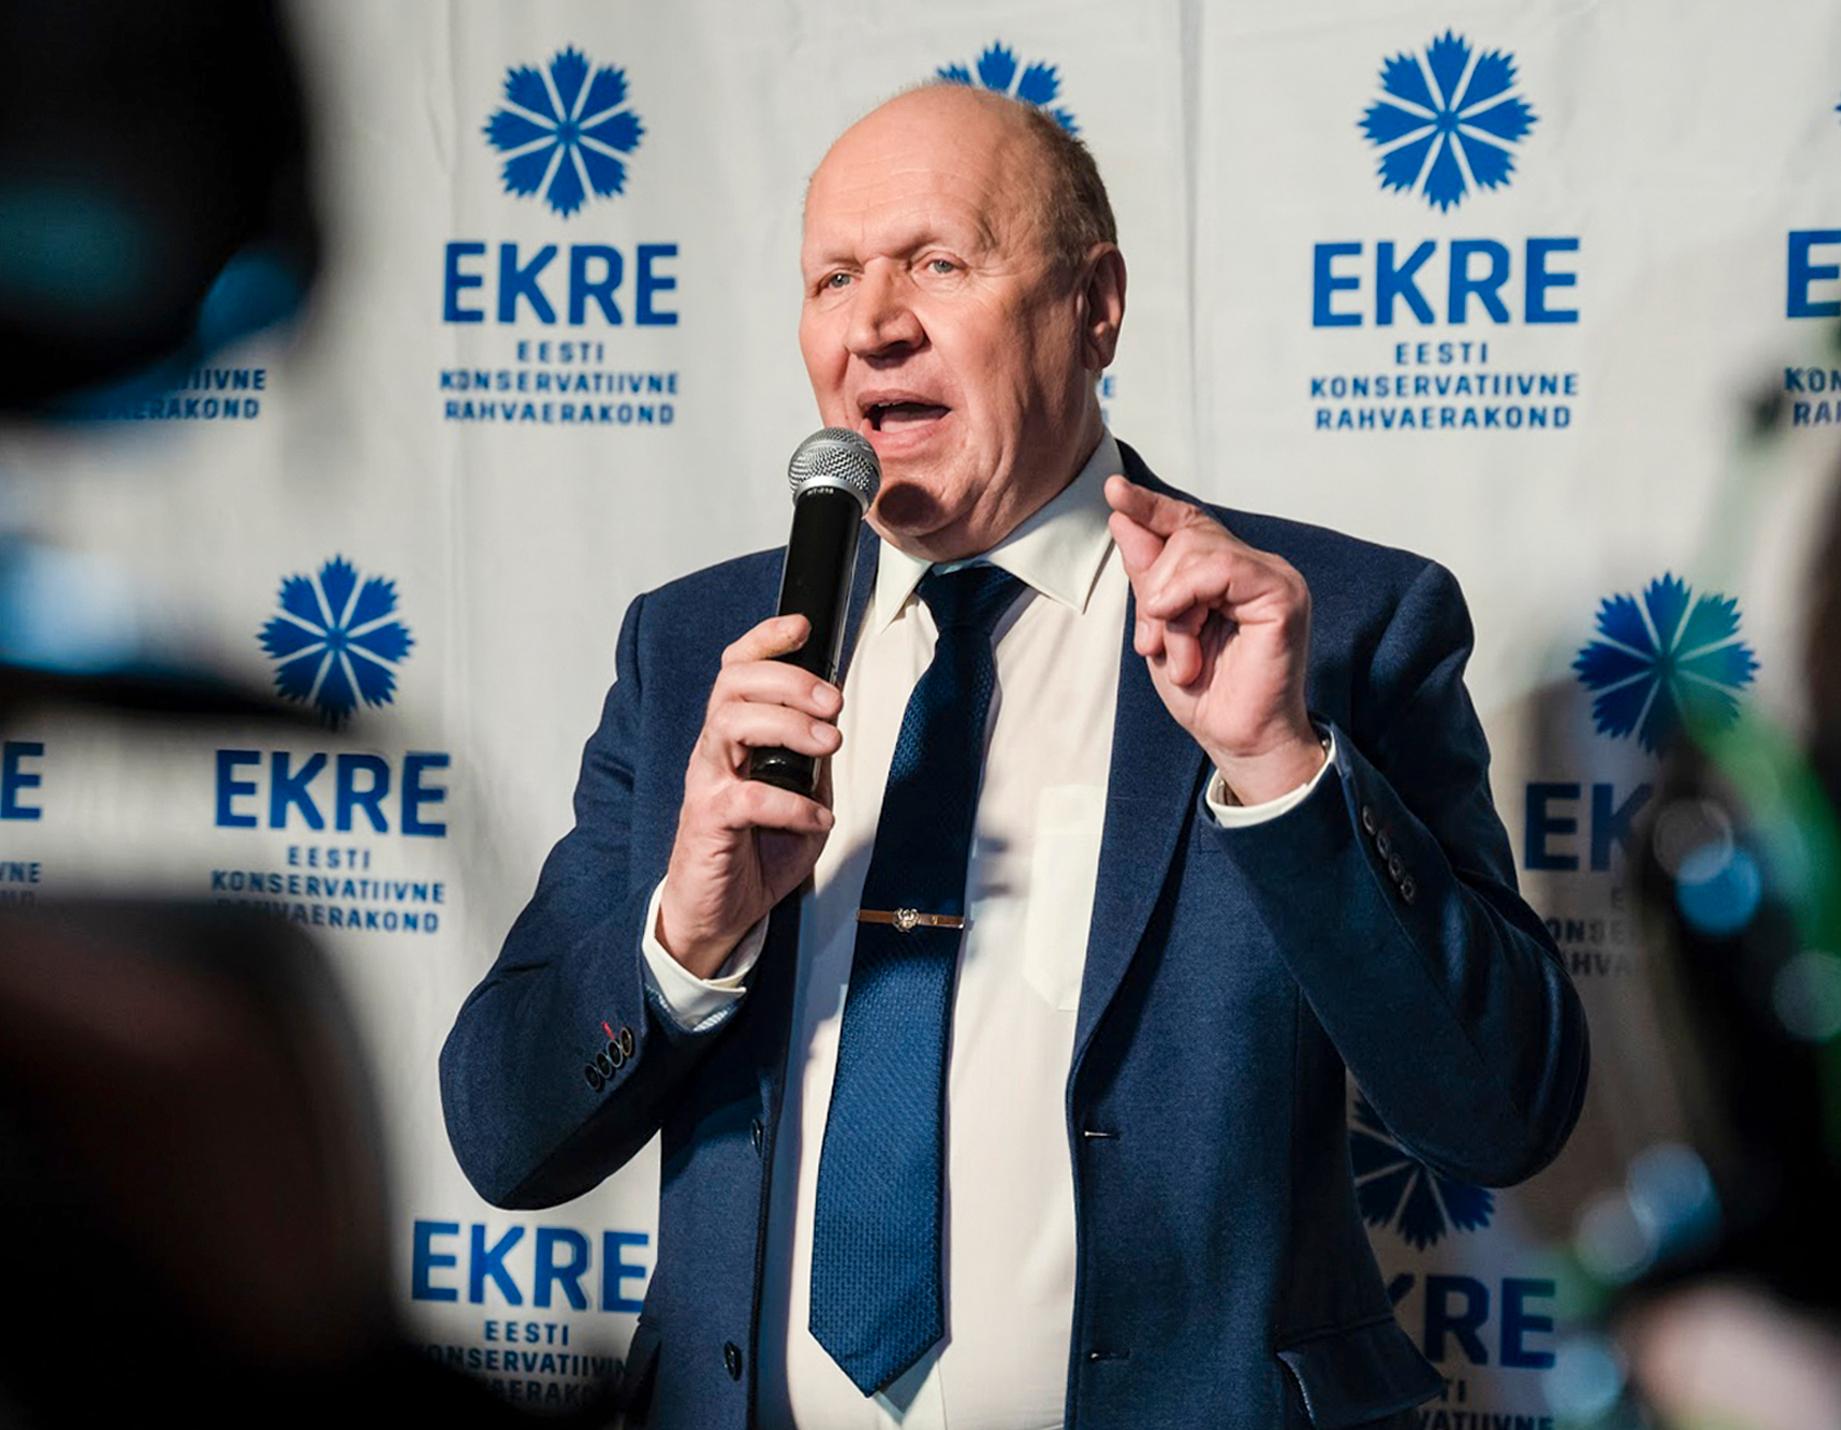 Mart Helme är ledare för partiet Ekre i Estland. Arkivbild.